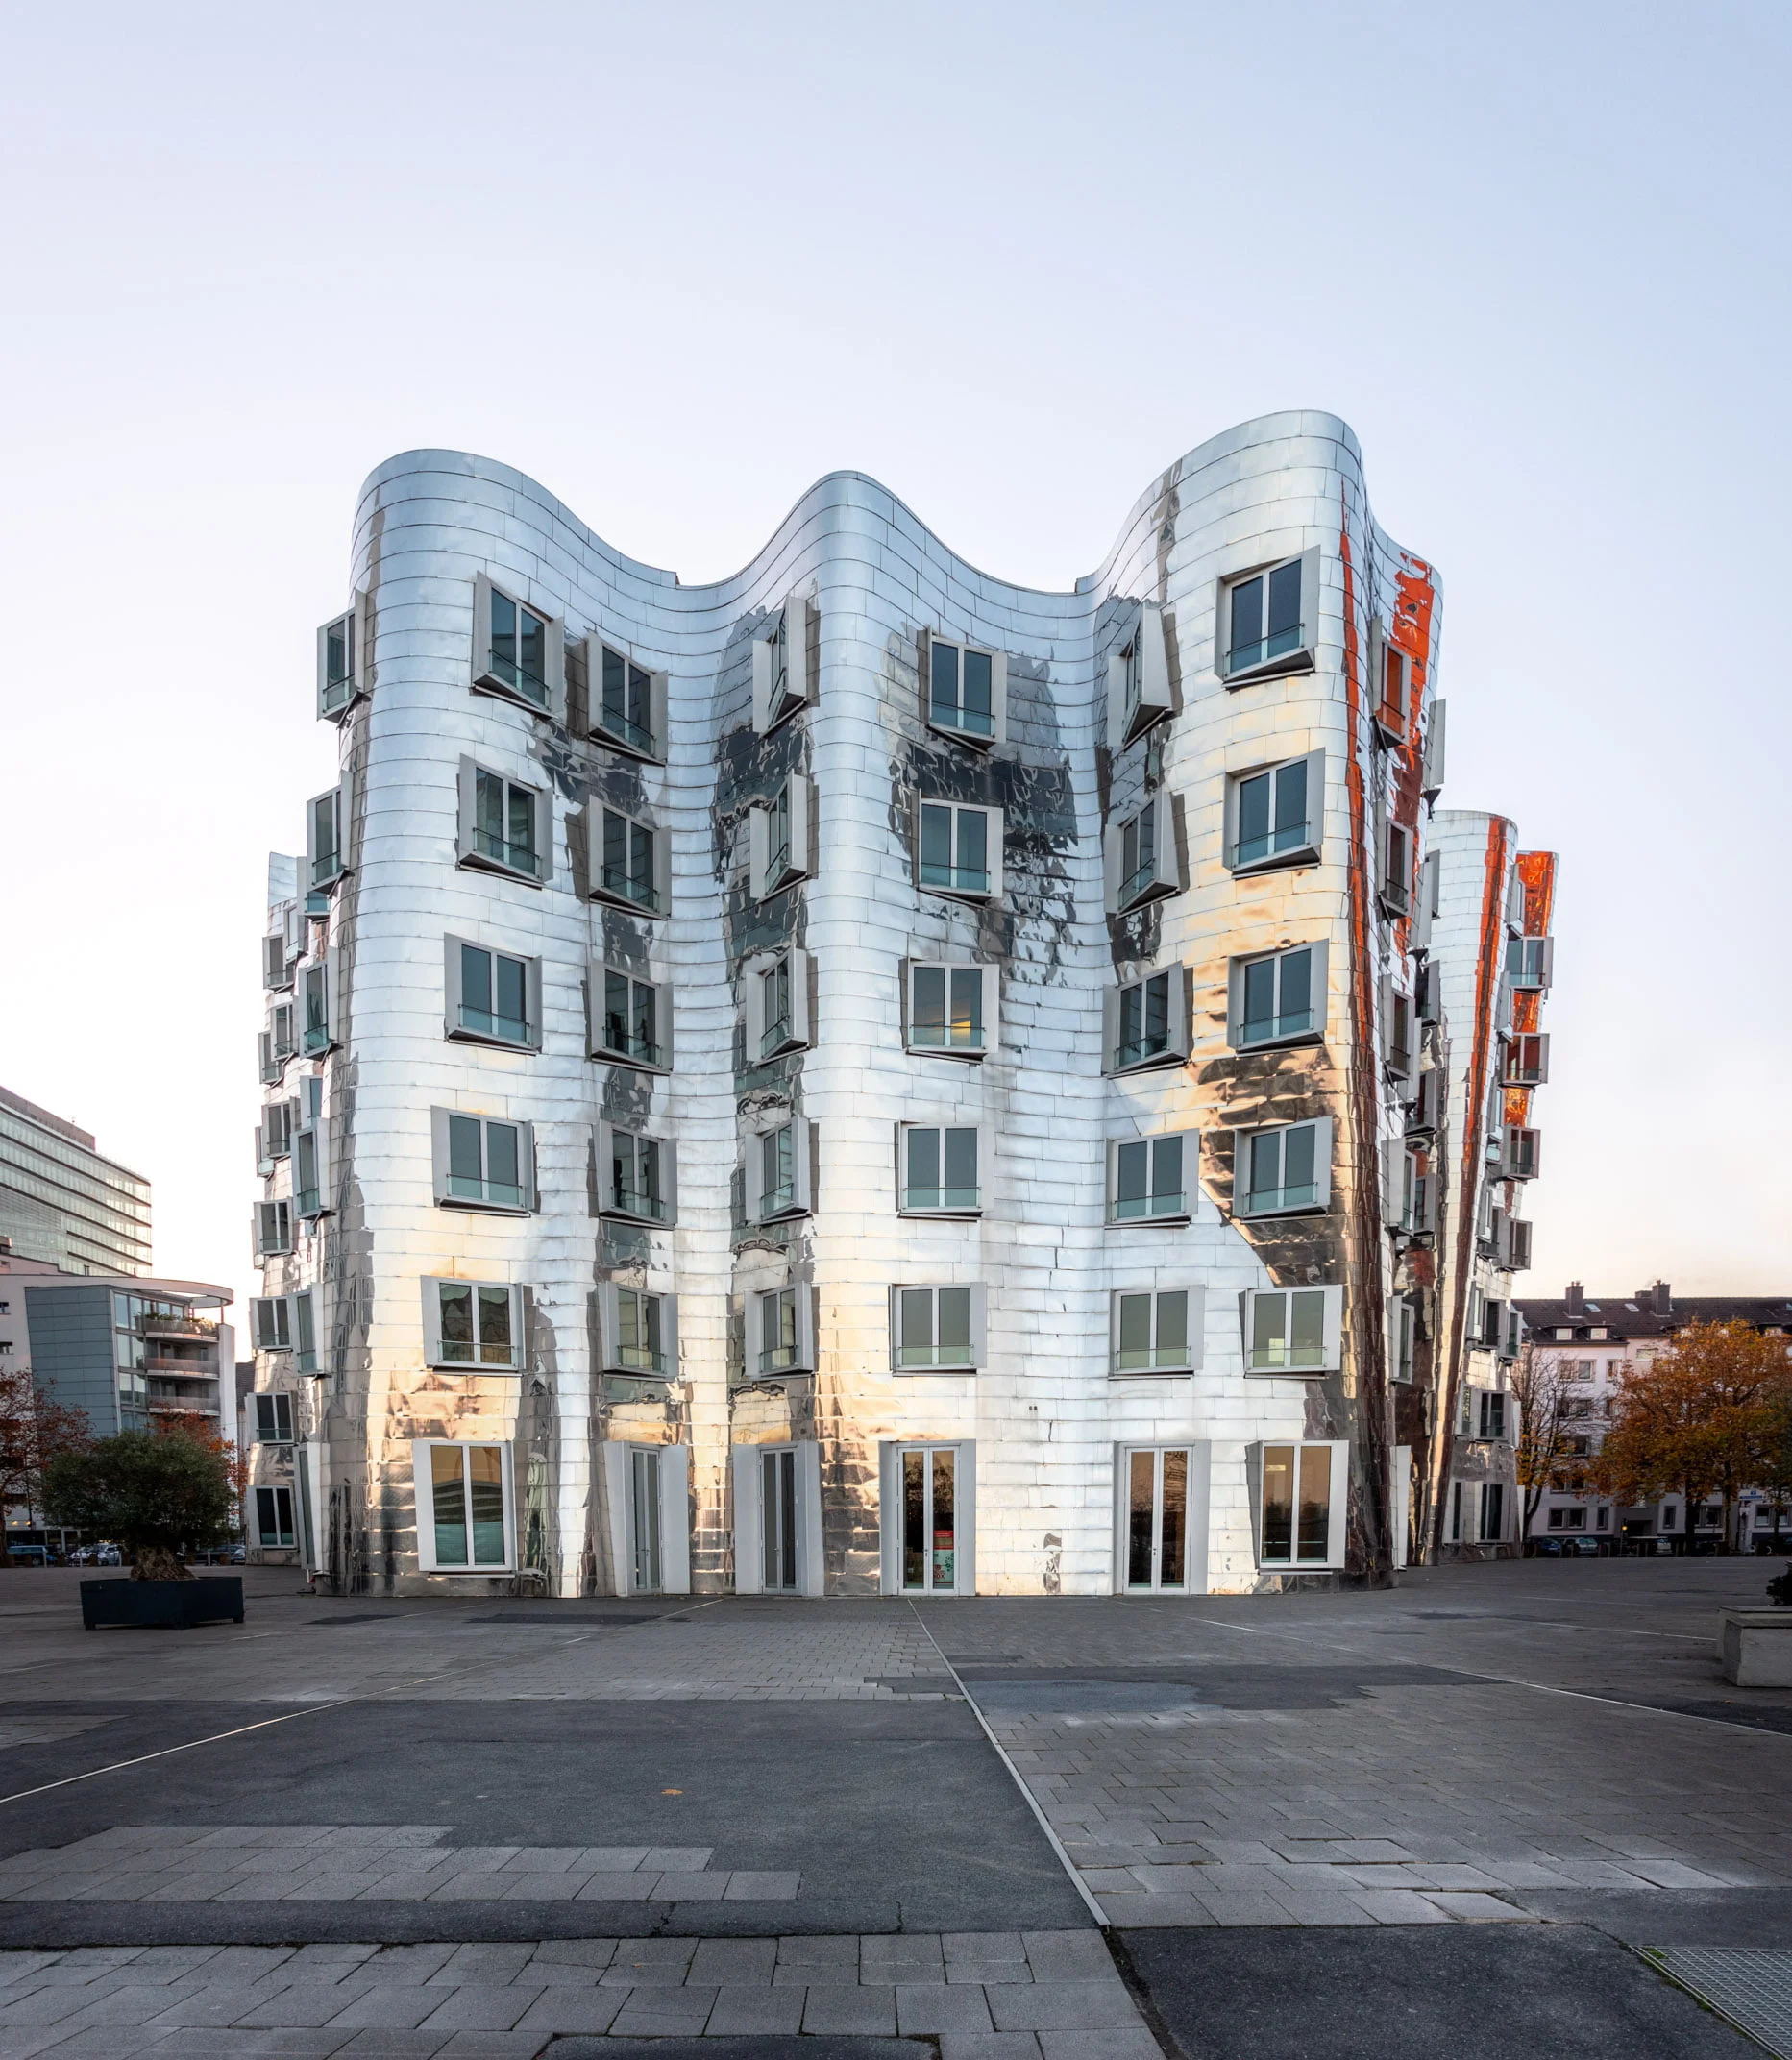 Neuer Zollhof Düsseldorf. Haus B von Frank Gehry im Medienhafen bei Sonnenaufgang. Verspiegelte Fassade